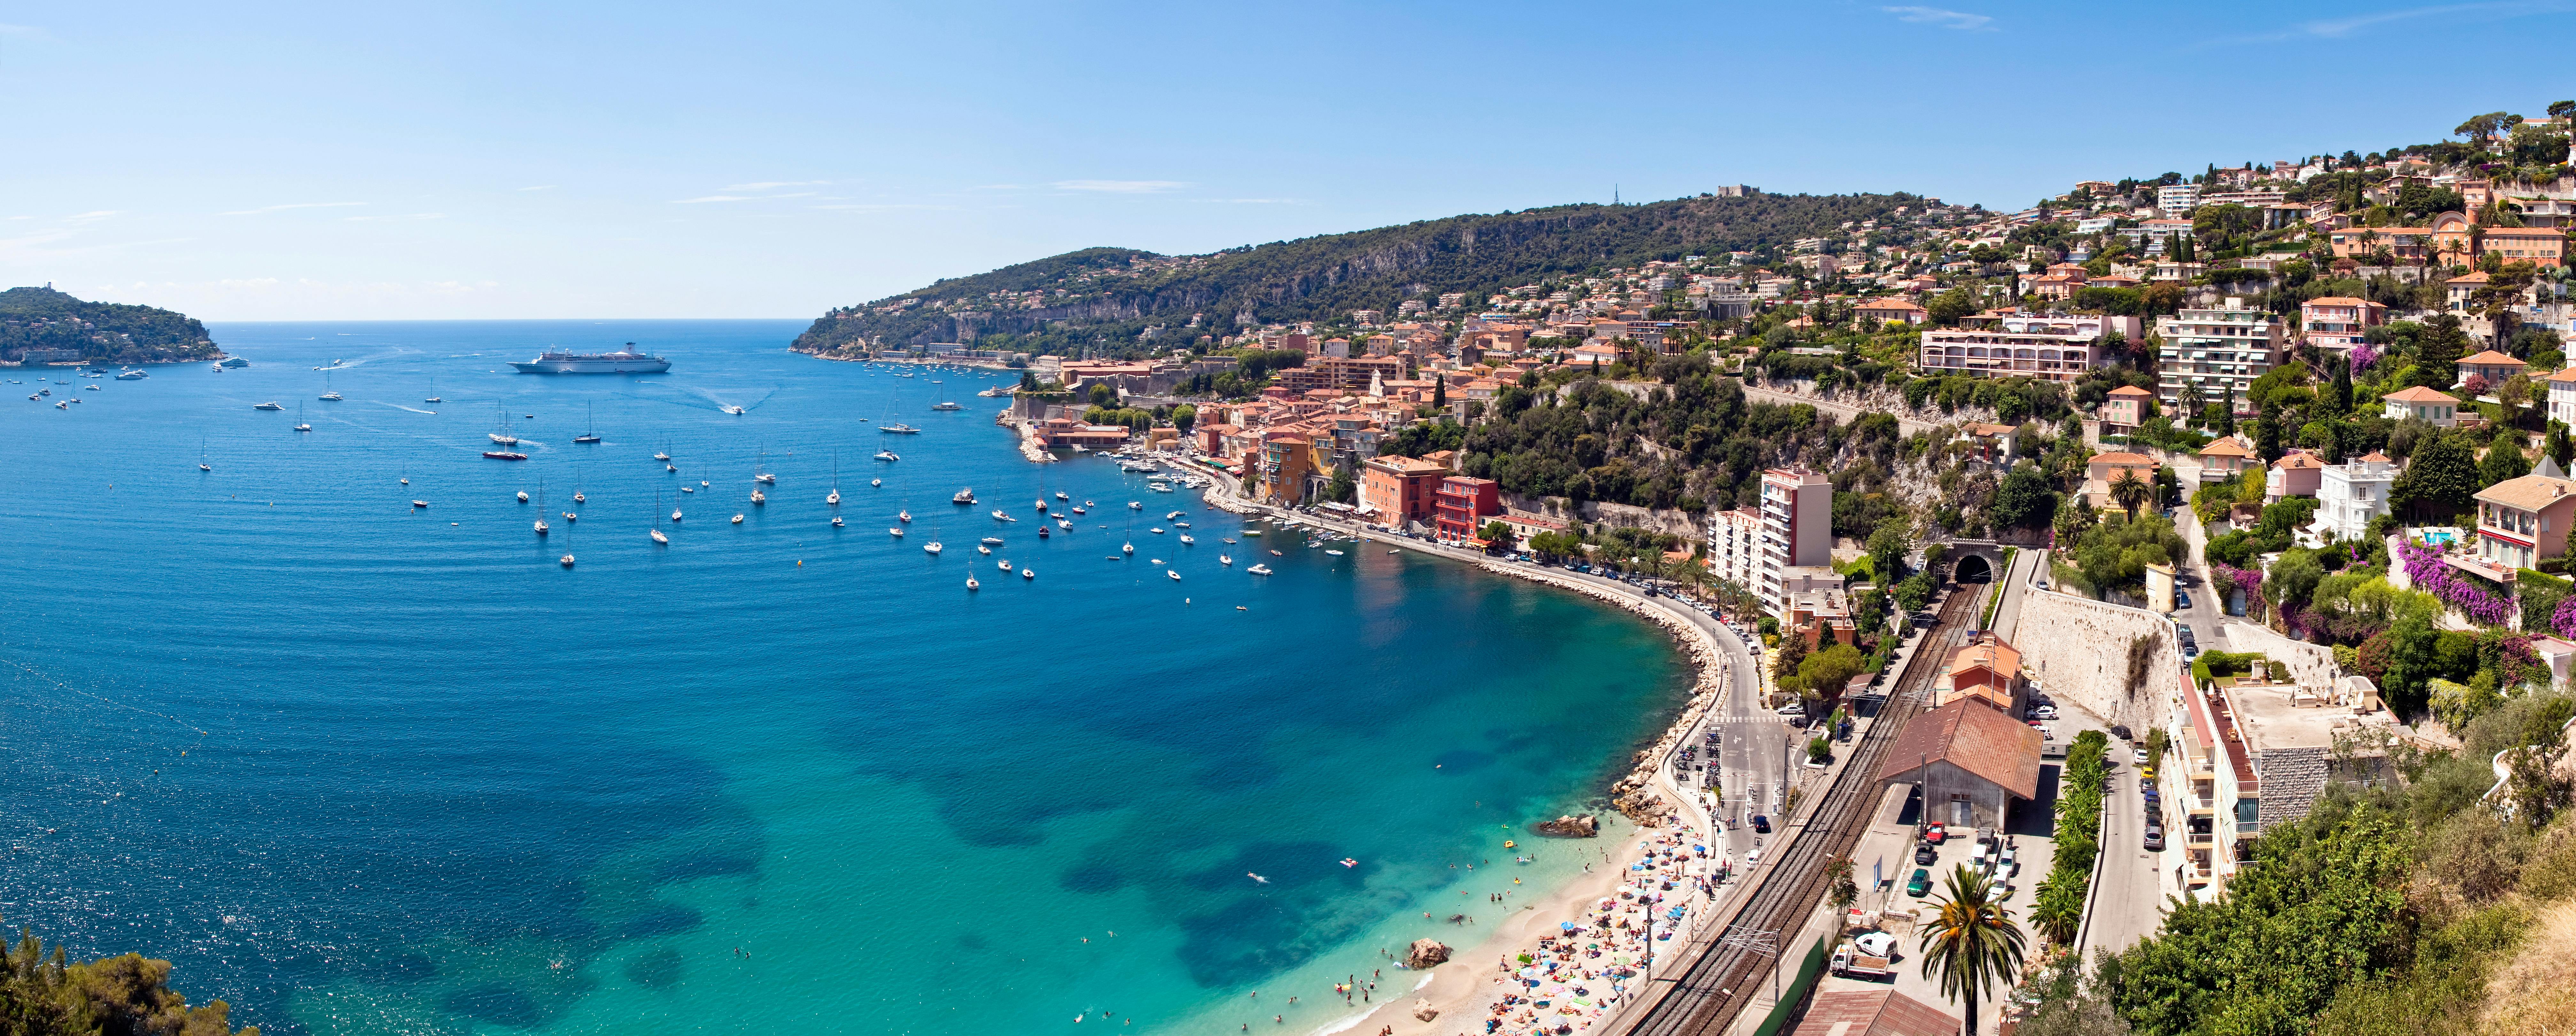 Viaje privado a Cannes y Antibes desde los puertos de Niza o Villefranche